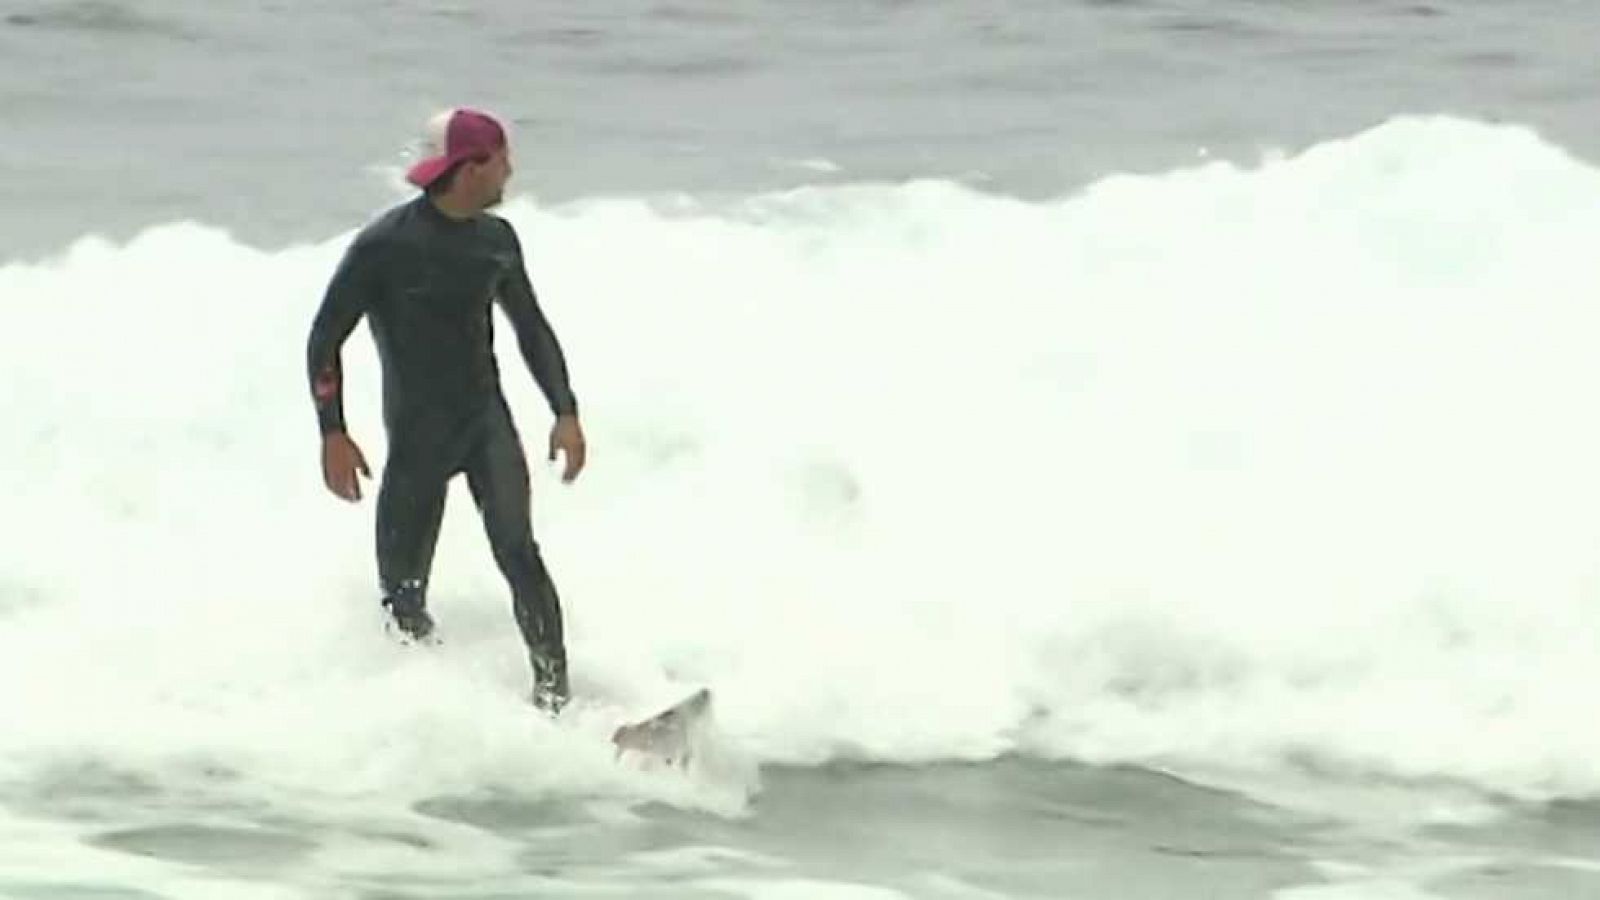 Al filo de lo imposible - Surf: El cazador de olas gigantes